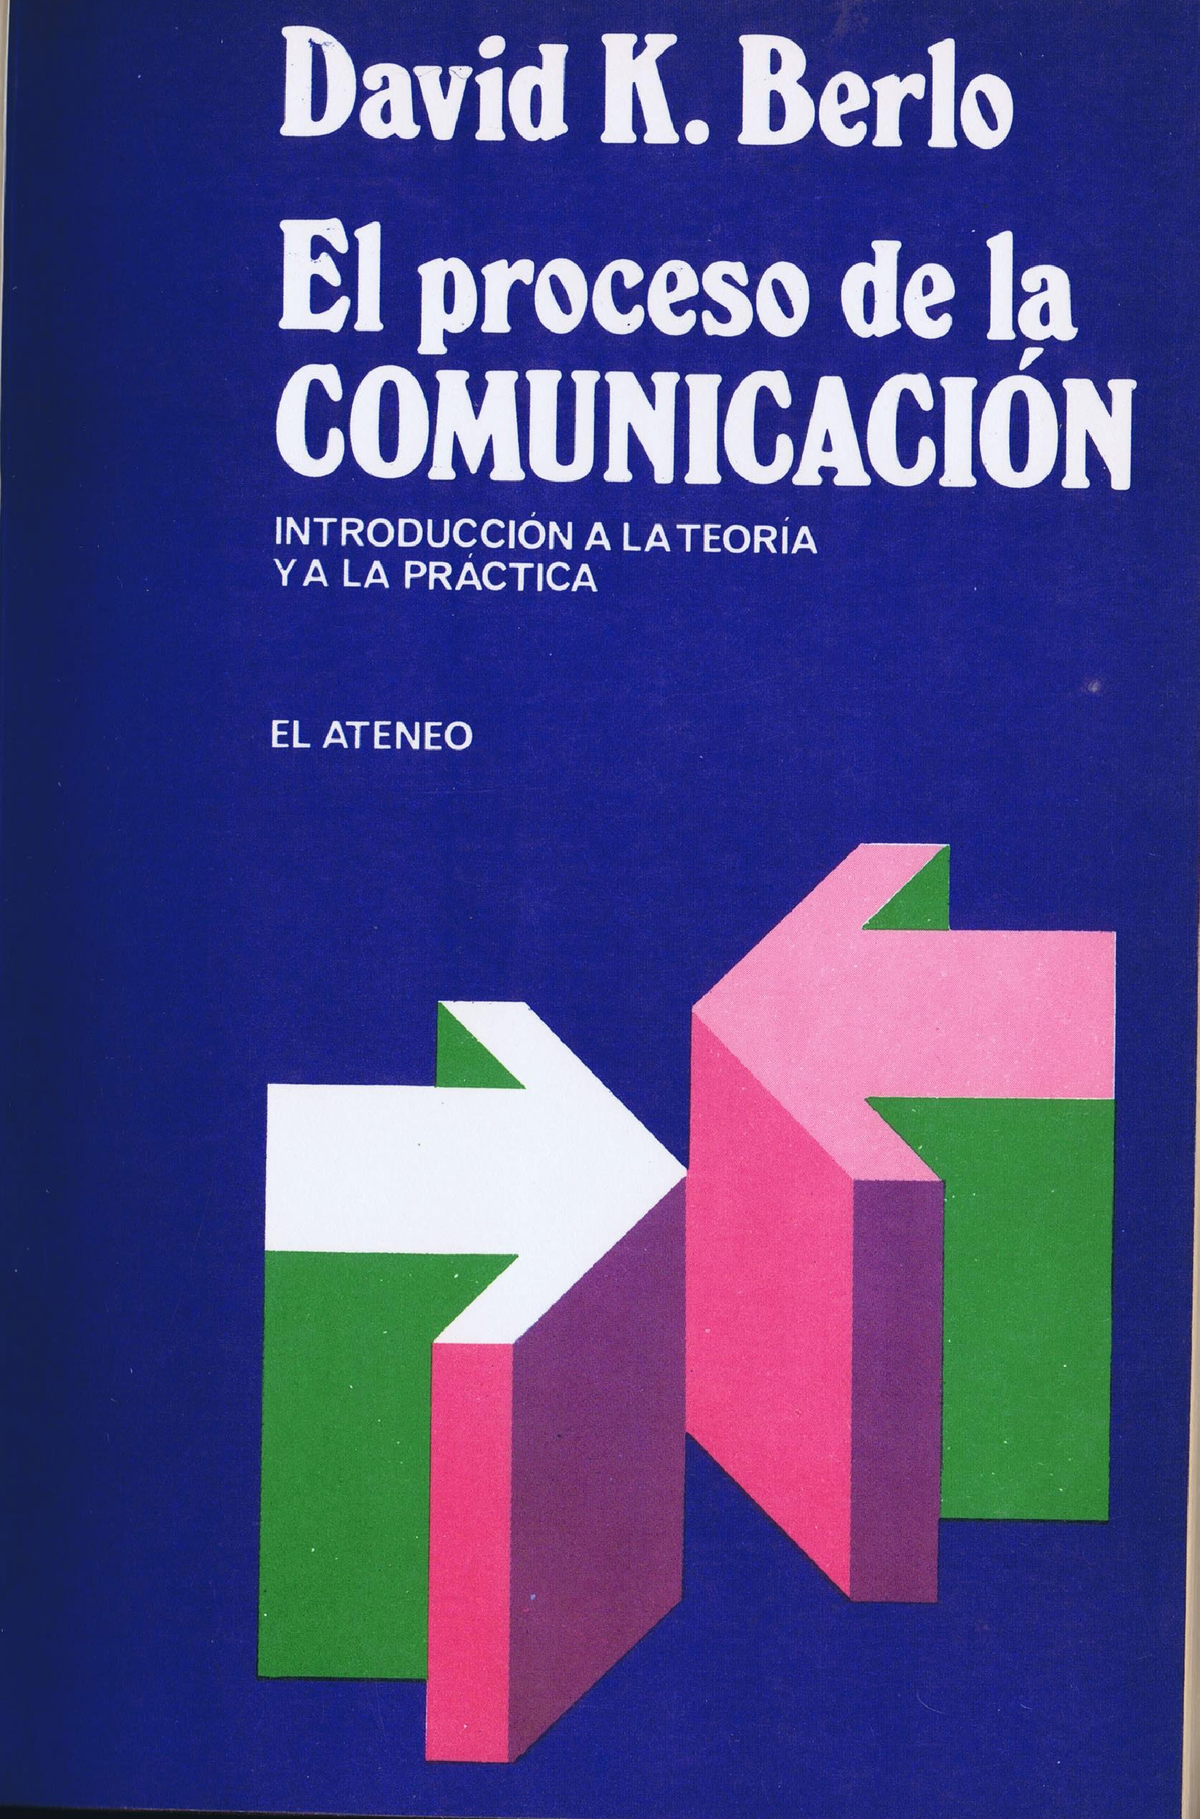 El proceso de la comunicacion david k berlo 301 1 b 514 - Redacción Y  Comunicación - Studocu